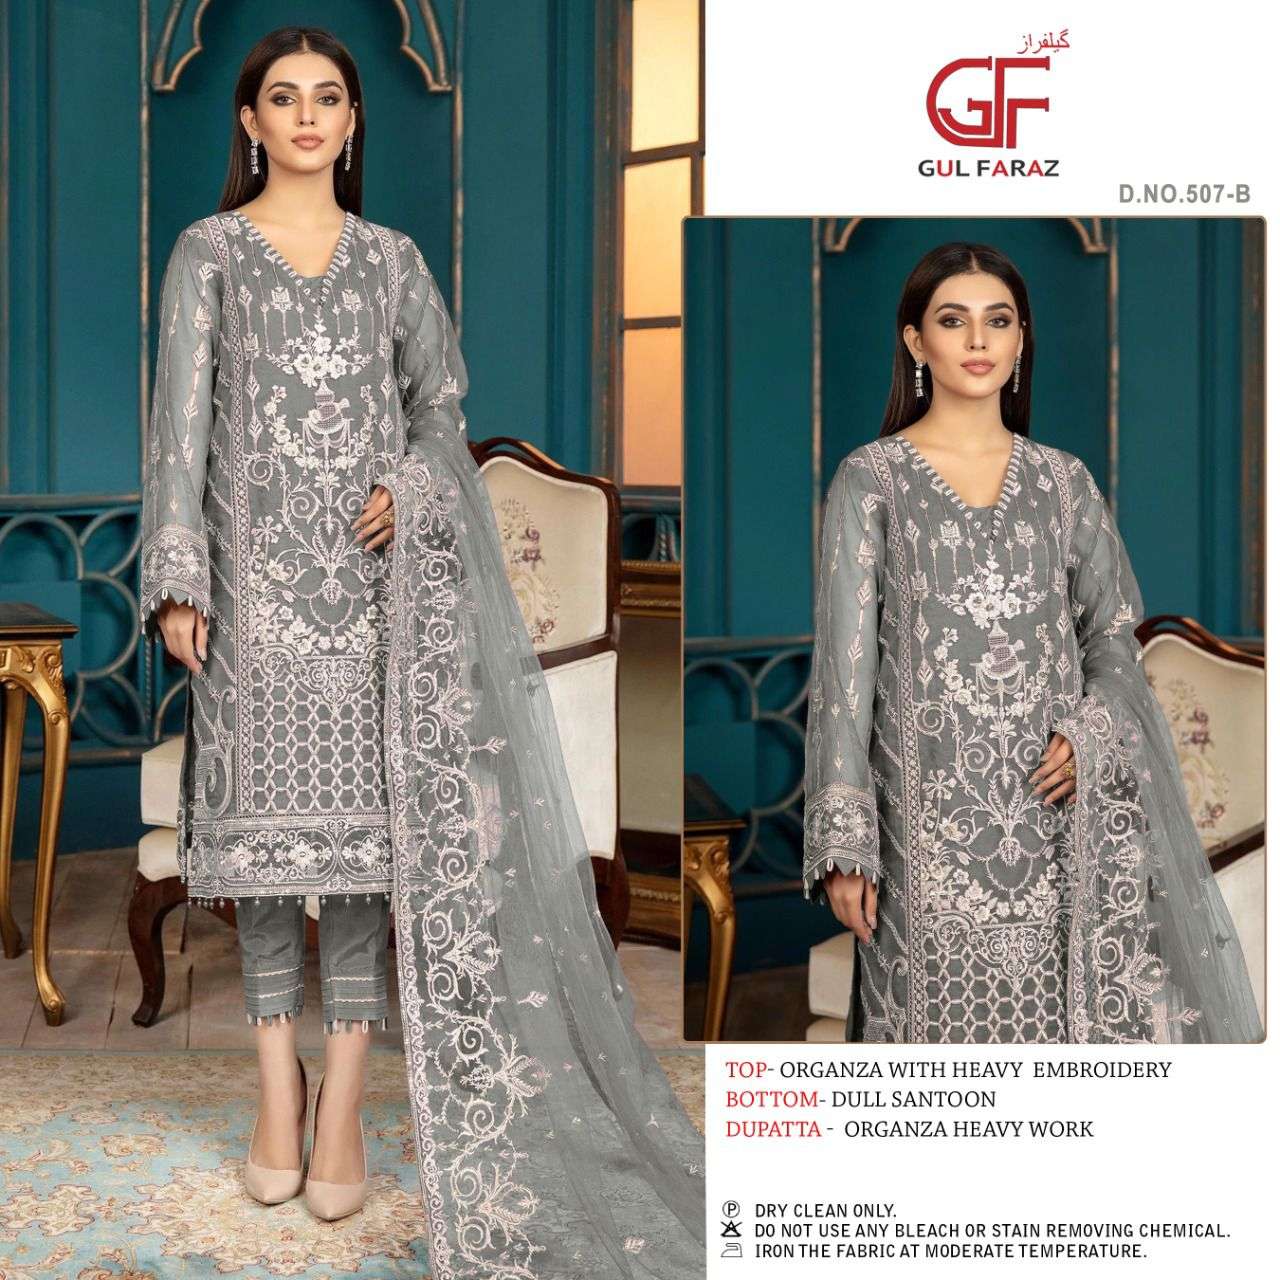 gulfaraz 507 colour edition fancy salwar kameez collection wholesale price surat